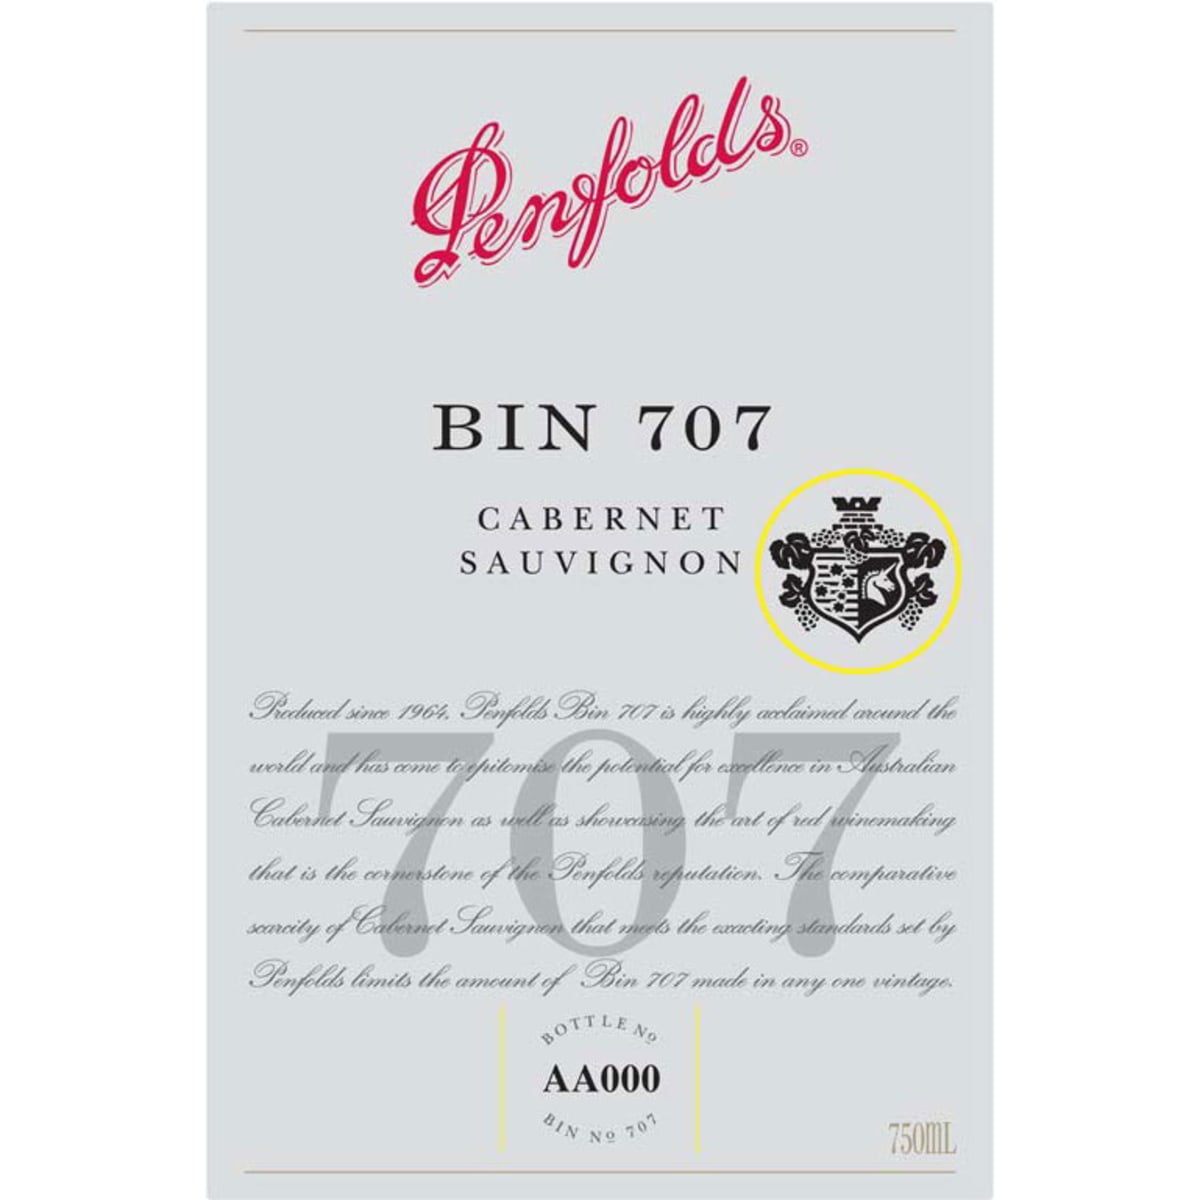 Penfolds Bin 707 Cabernet Sauvignon 2012 Front Label